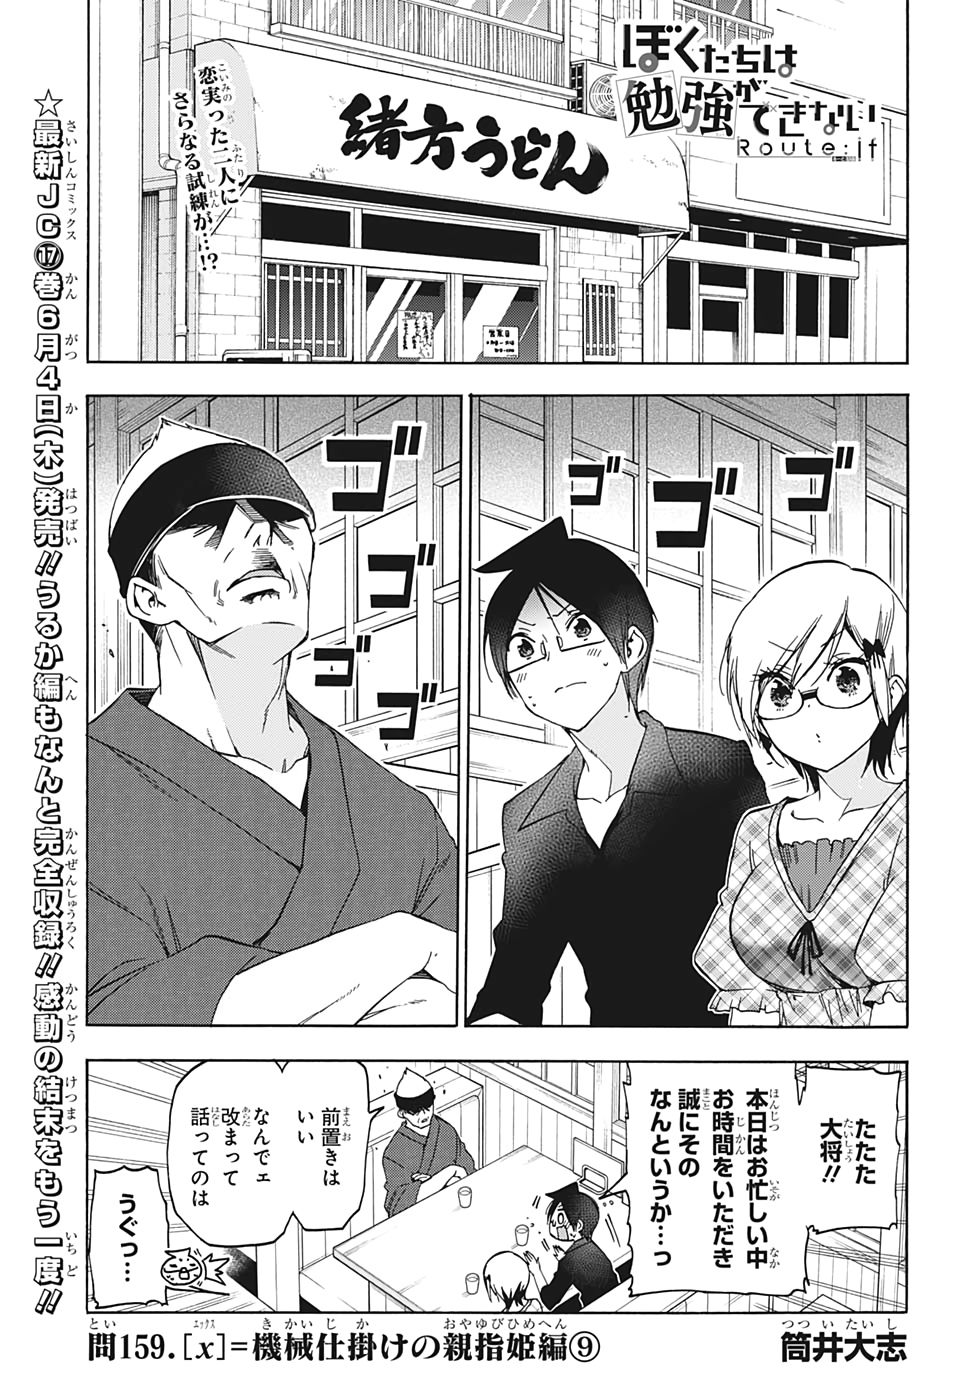 Bokutachi wa Benkyou ga Dekinai - Chapter 159 - Page 1